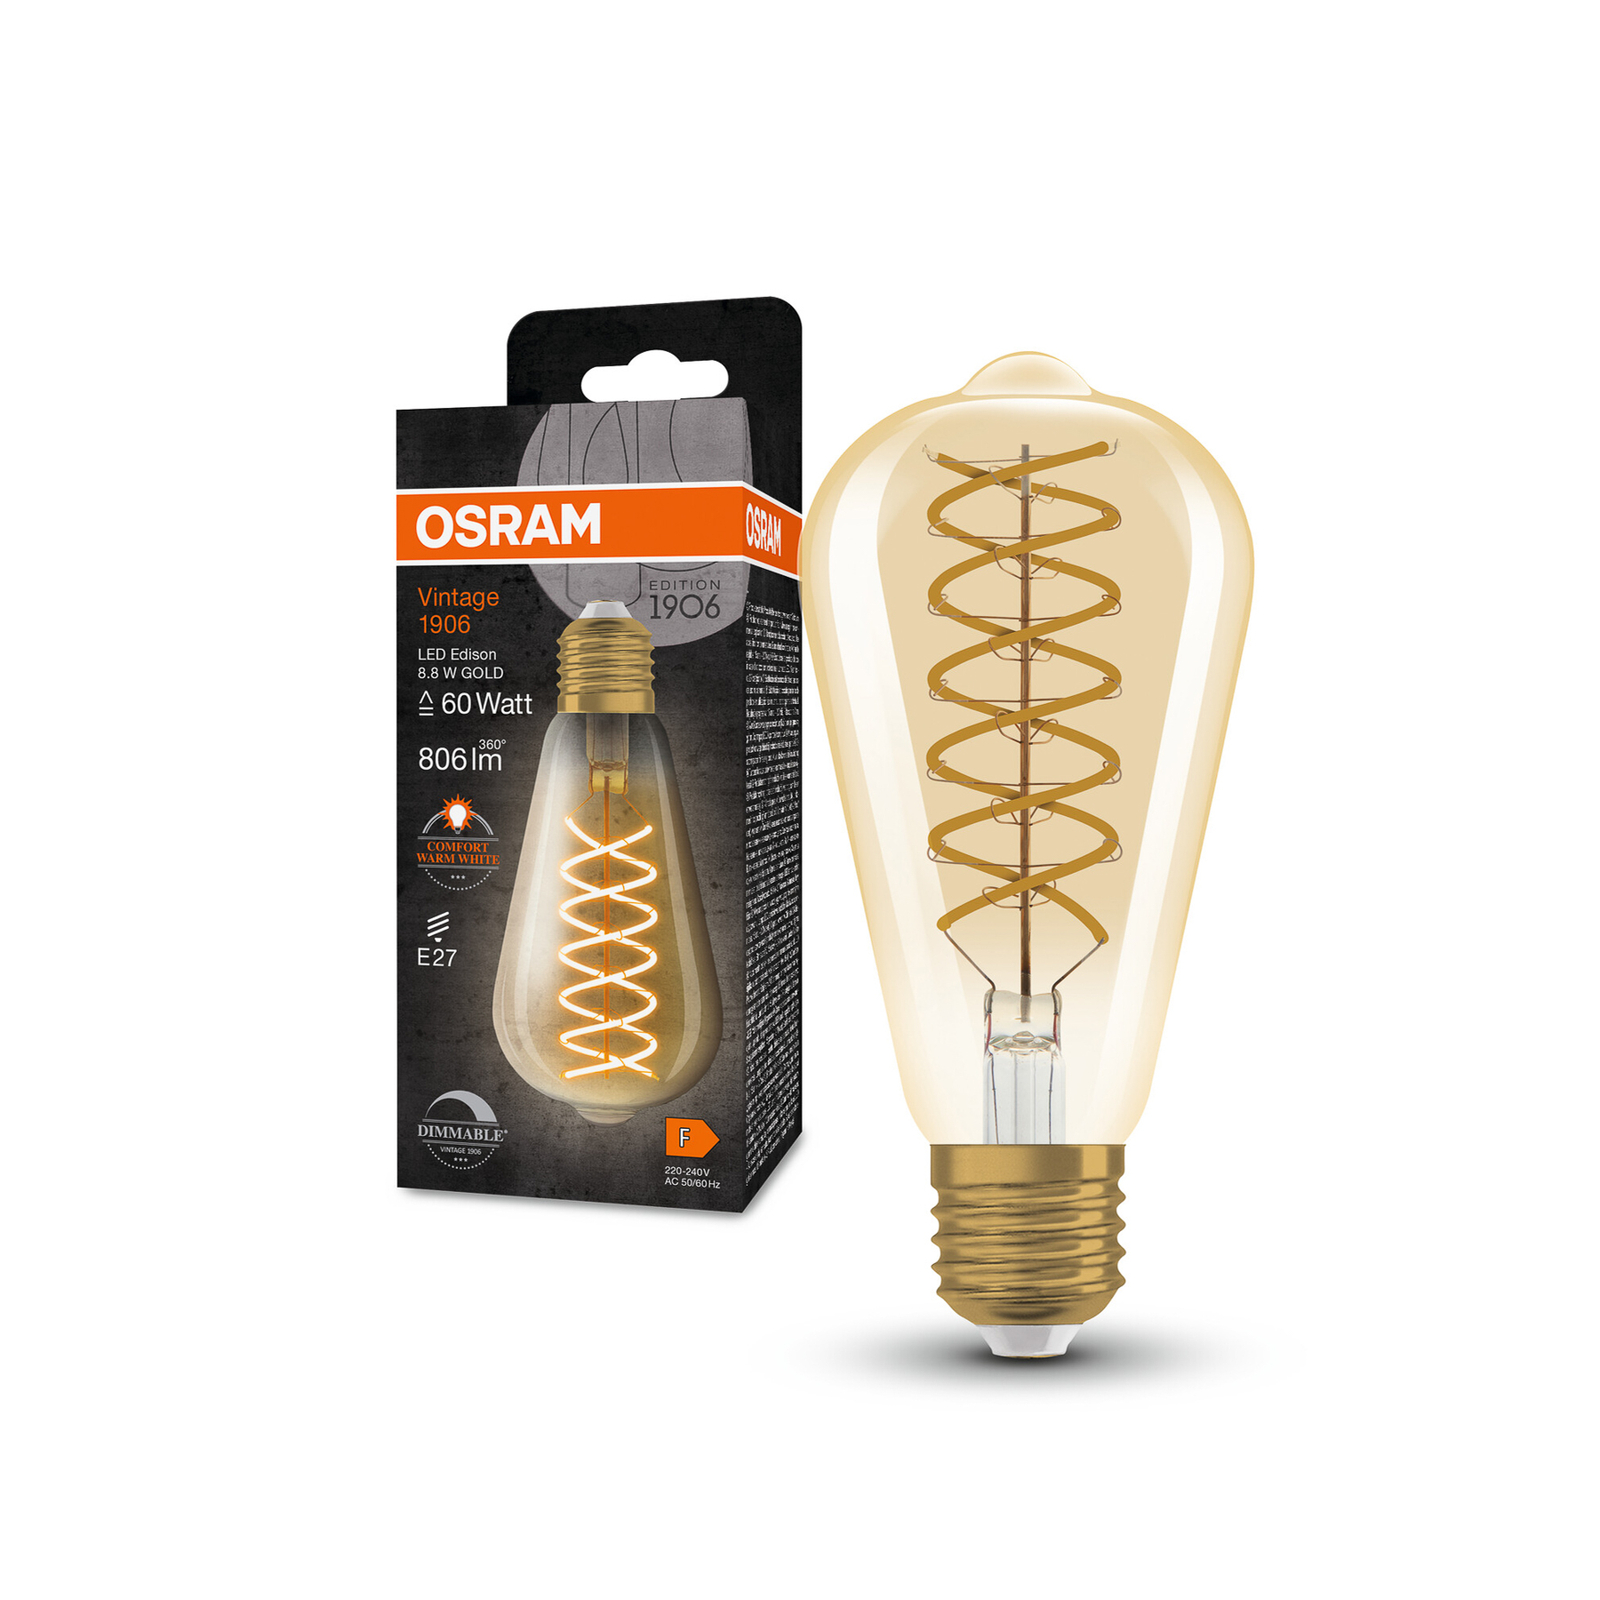 OSRAM LED Vintage 1906 Edison, zlatá, E27, 8,8 W, 824, tl.